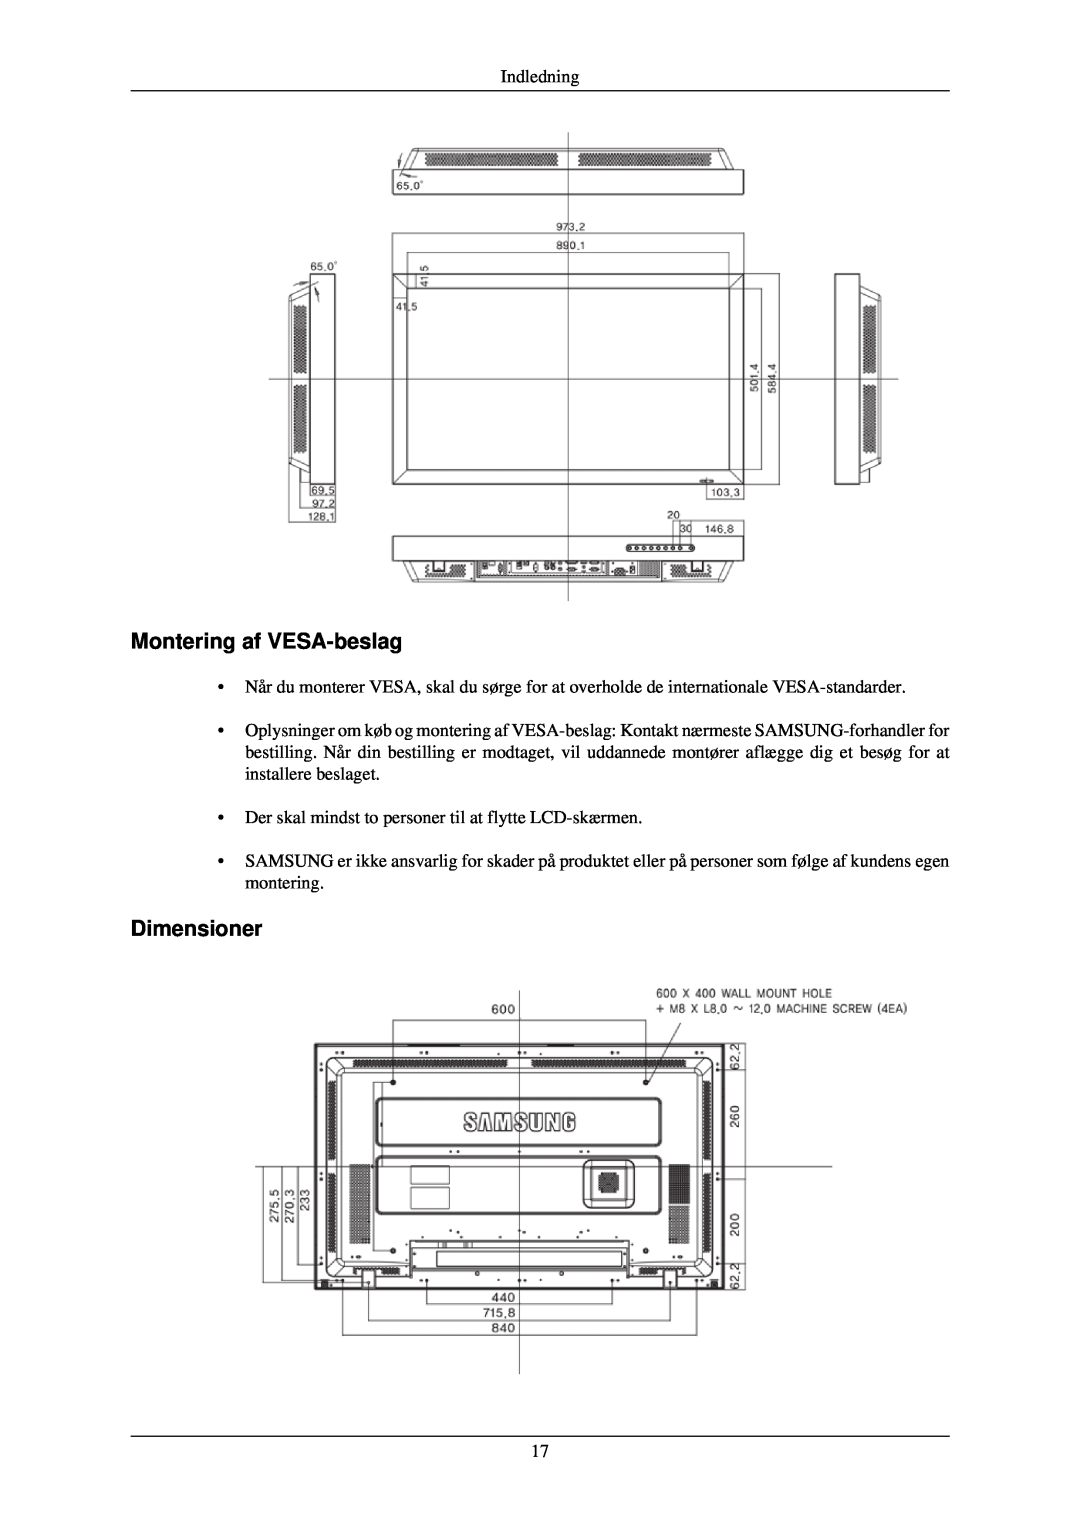 Samsung LH46TCUMBG/EN, LH40TCUMBG/EN, LH46TCUMBC/EN, LH40TCQMBG/EN, LH40TCUMBC/EN manual Montering af VESA-beslag, Dimensioner 